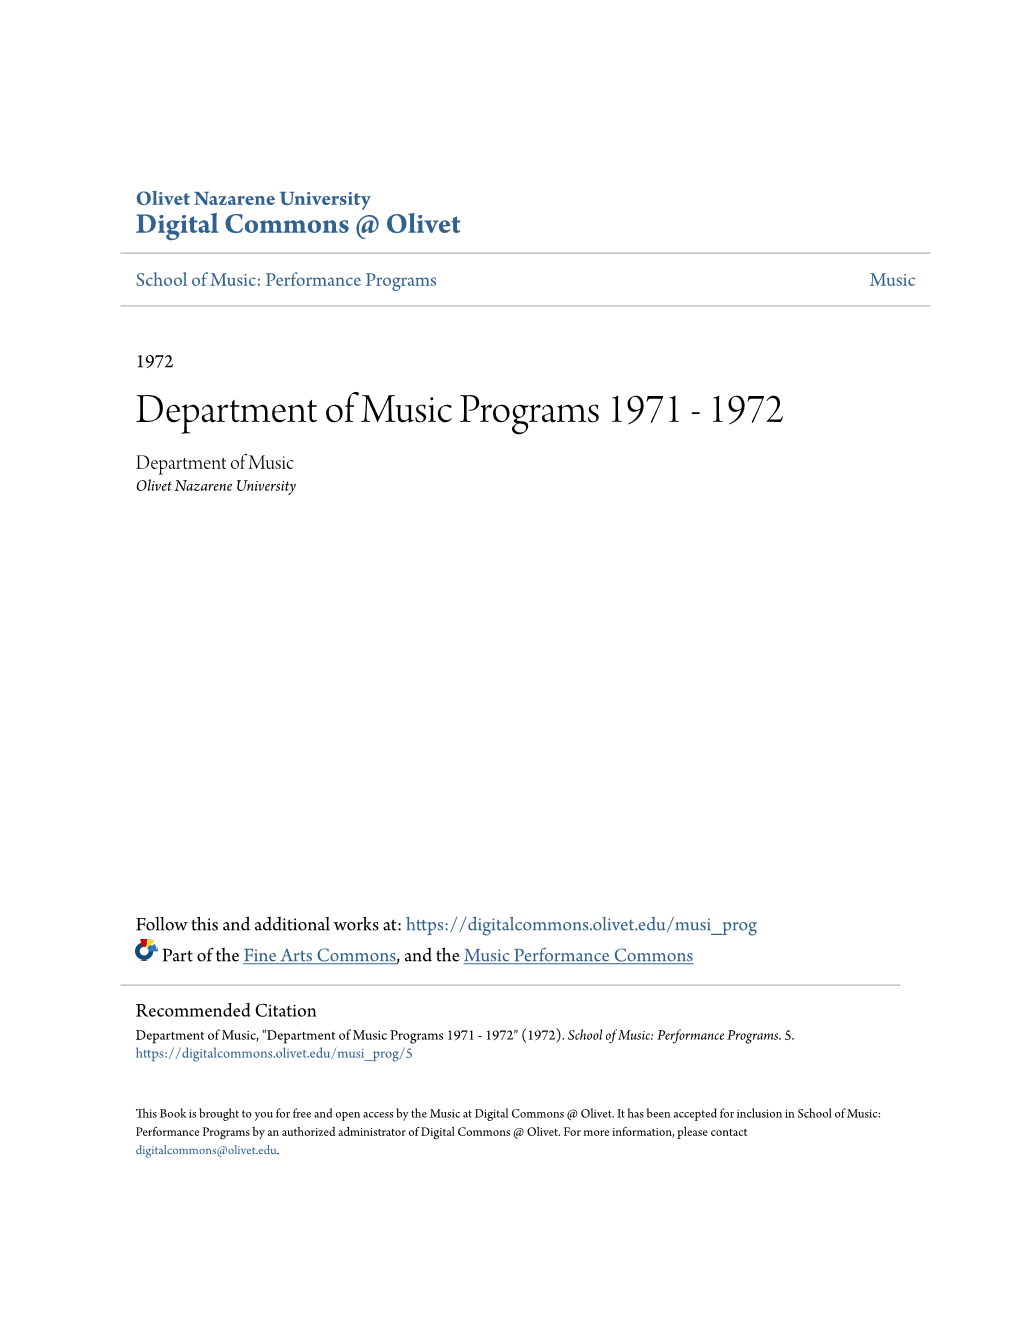 Department of Music Programs 1971 - 1972 Department of Music Olivet Nazarene University